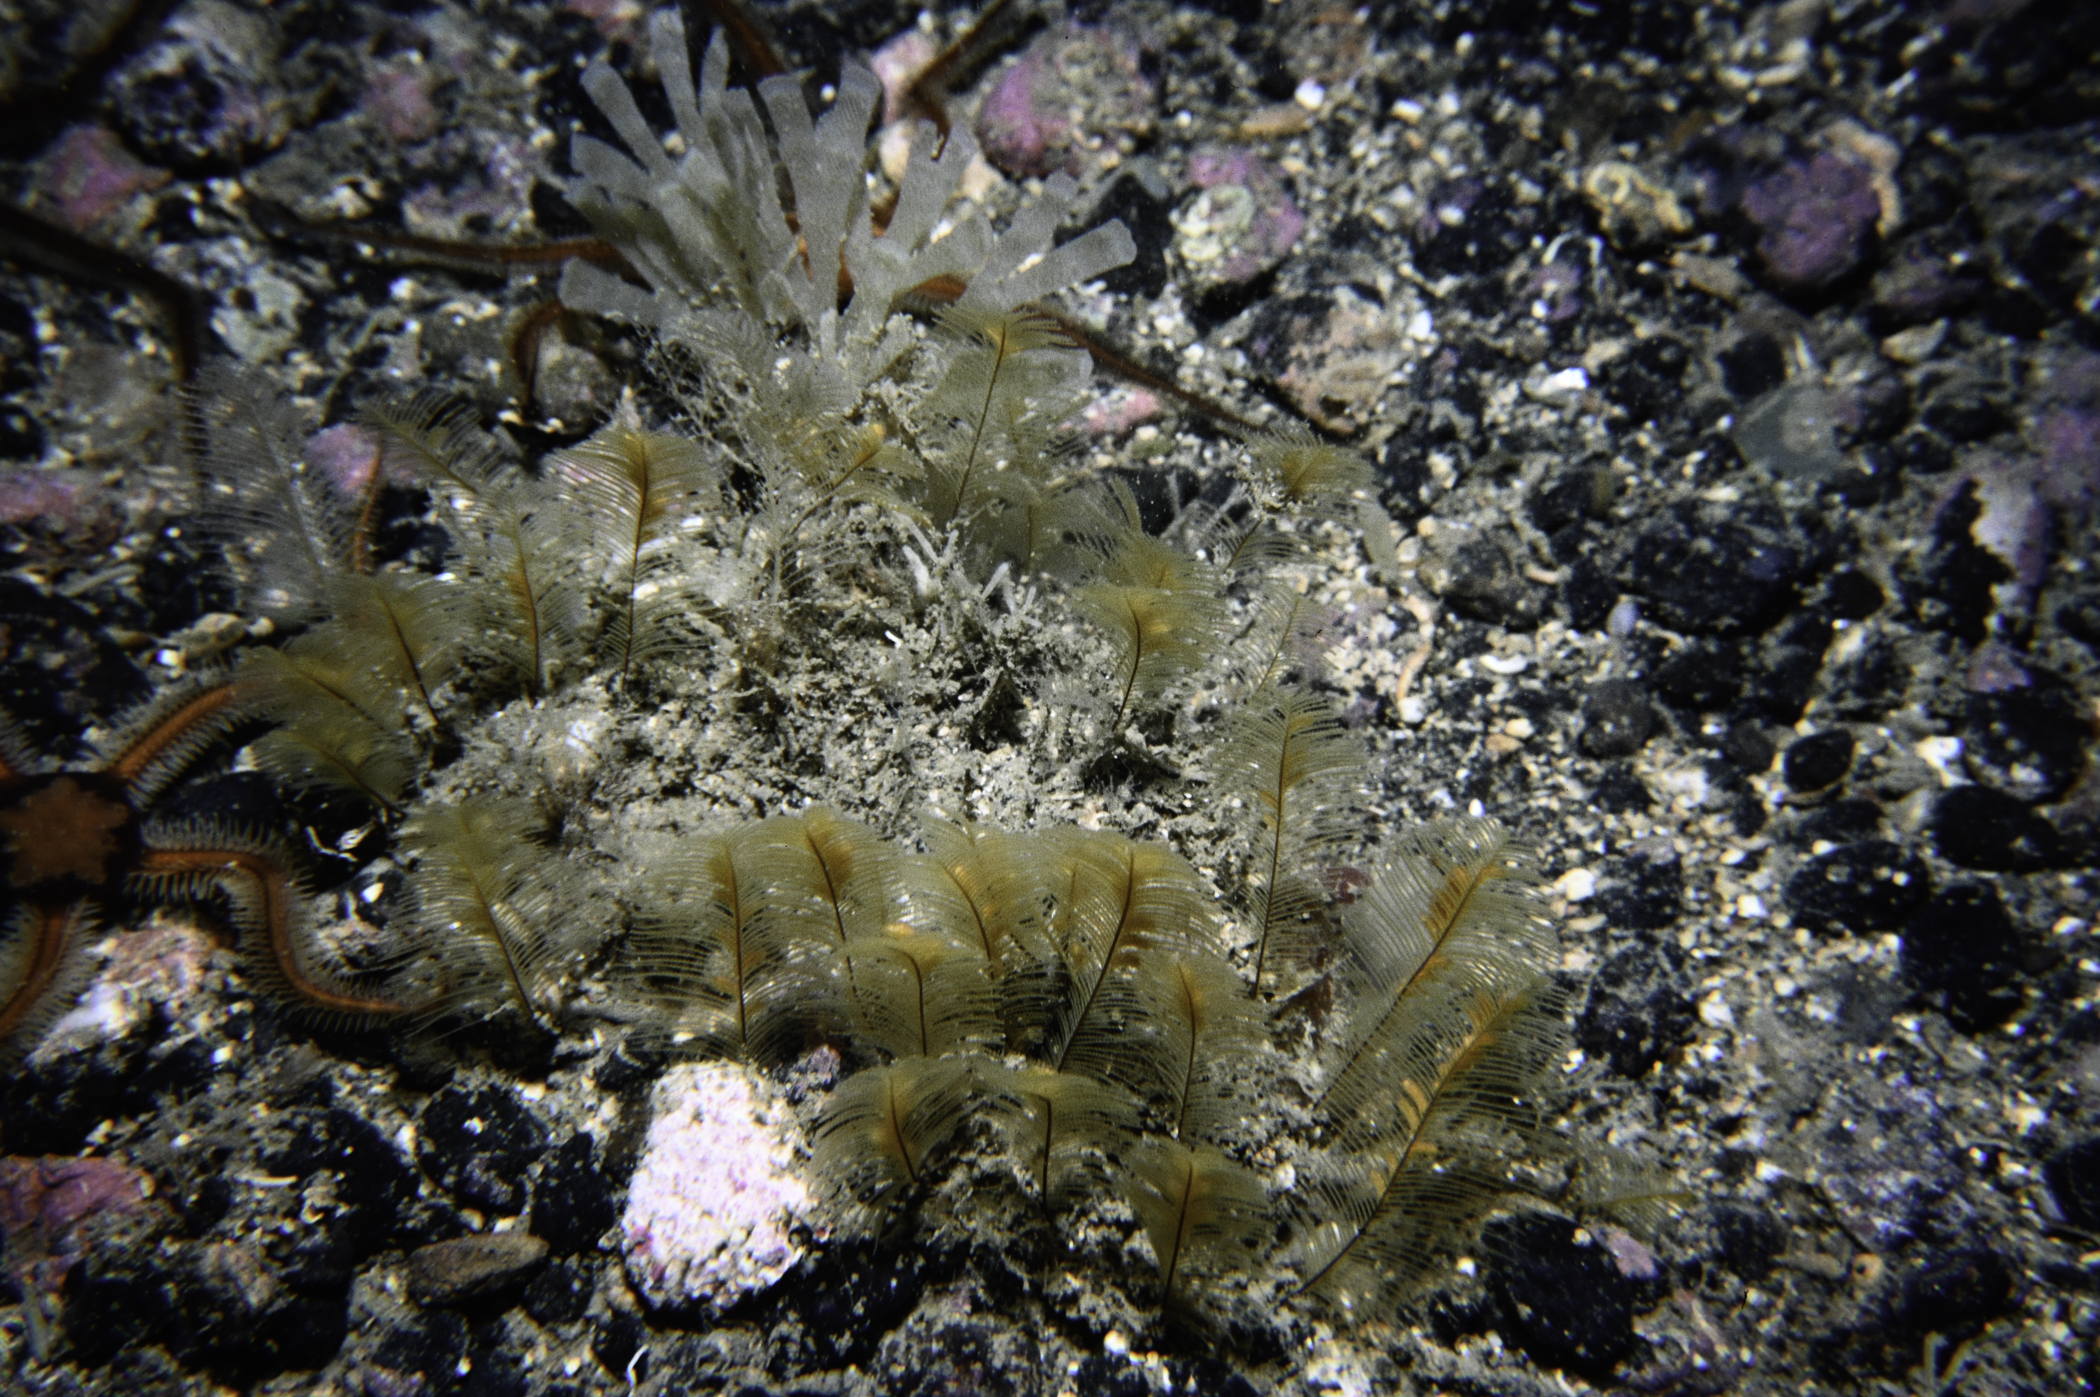 Aglaophenia tubulifera. Site: E Coast, Rathlin Island. 